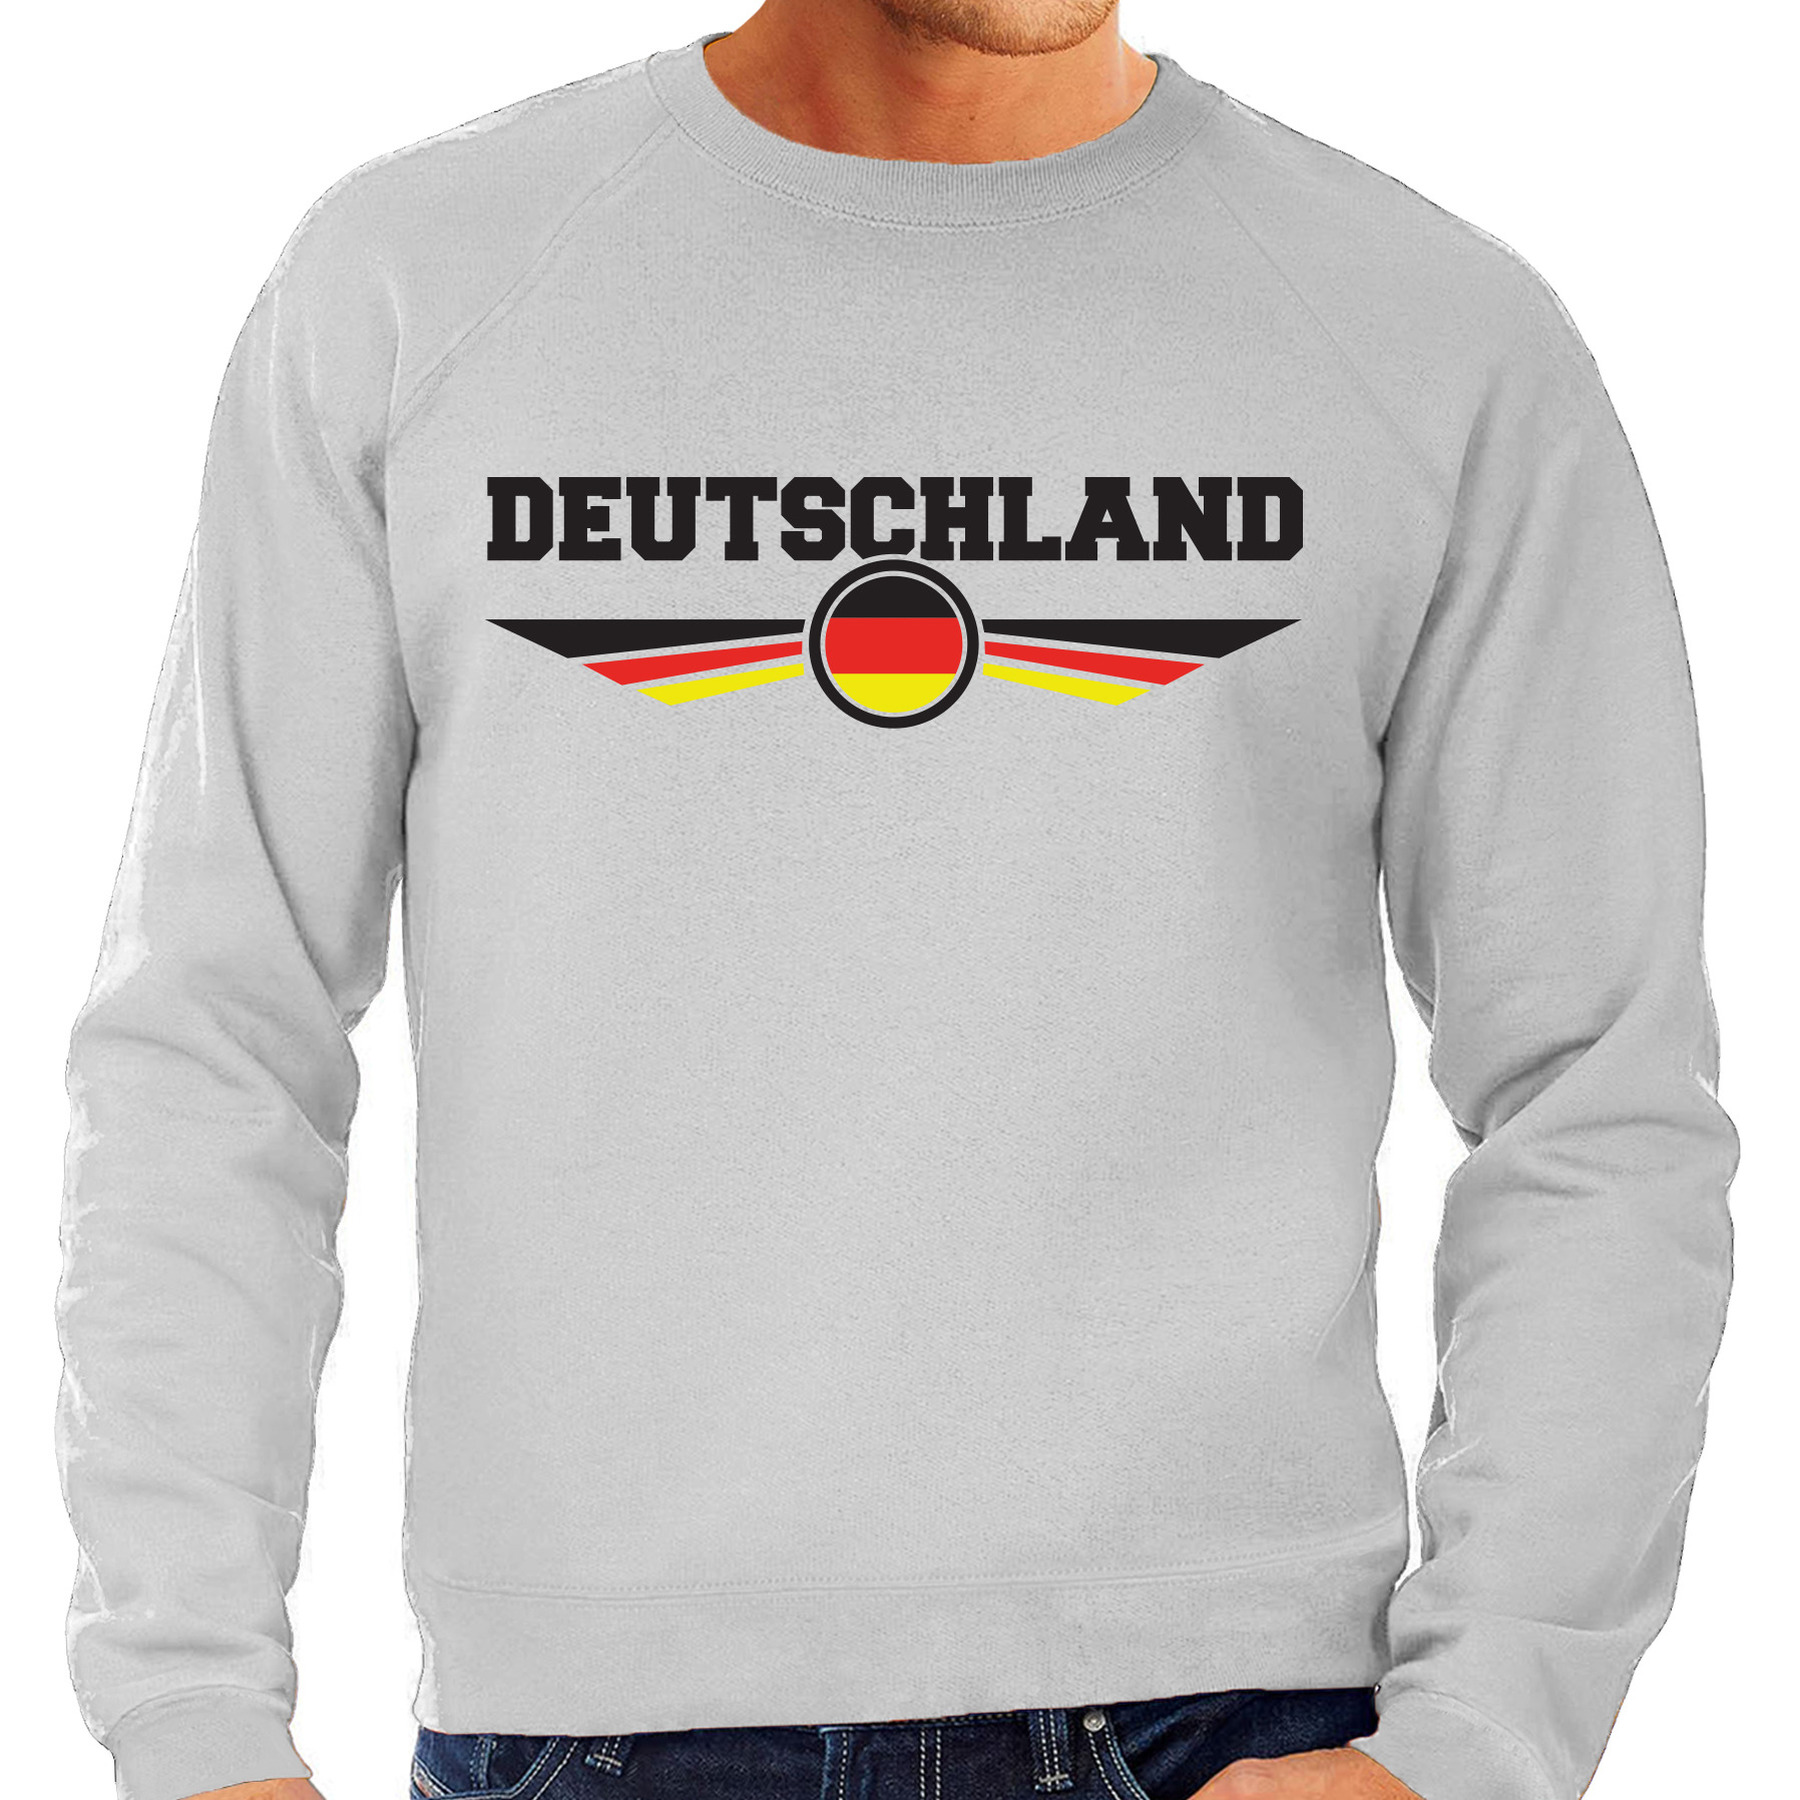 Duitsland - Deutschland landen sweater - trui grijs heren